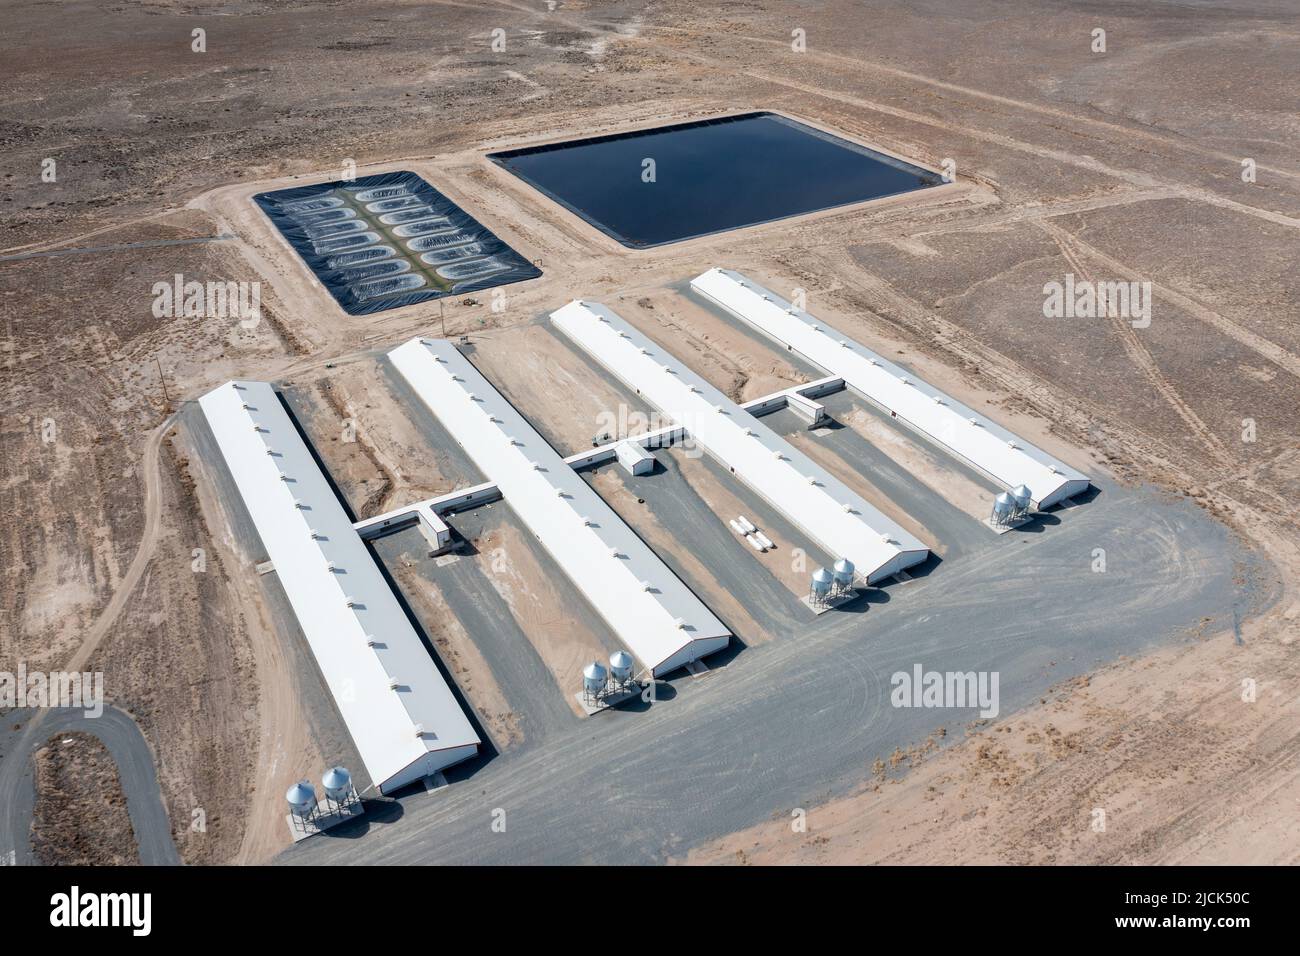 Un impianto di allevamento di zoccoli Smithfield Farms con lagune per convertire i rifiuti di zoccoli in biogas ad energia rinnovabile. Milford, Utah. Foto Stock